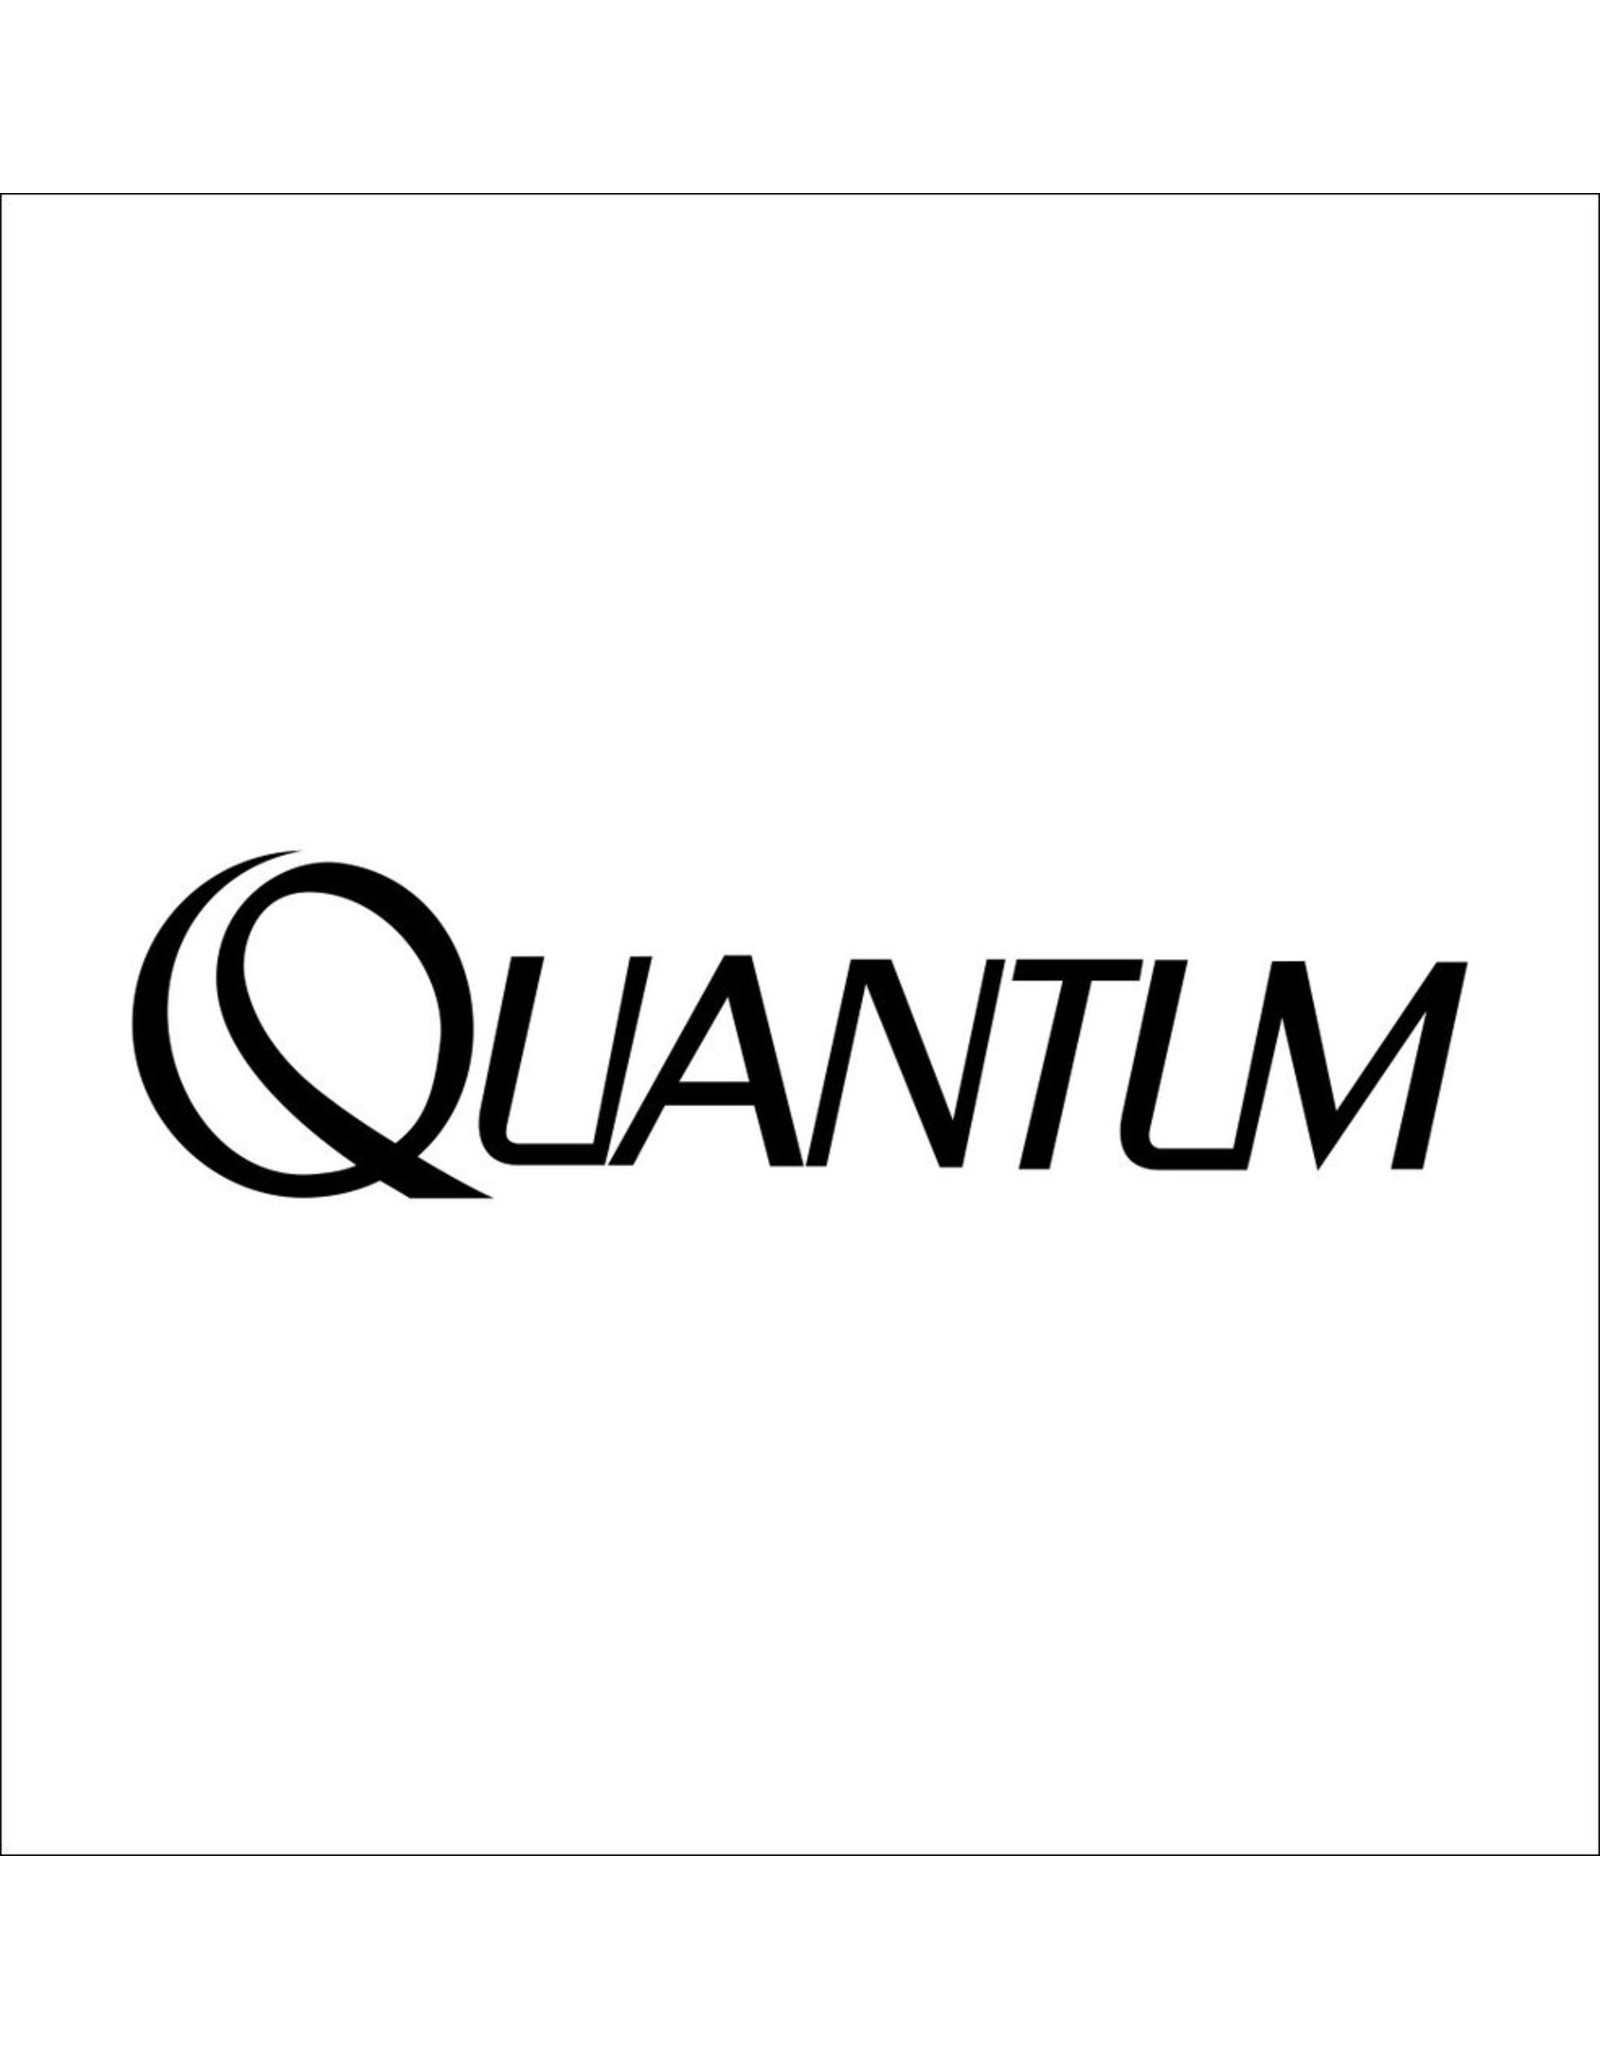 Quantum QW032-02  WASHER